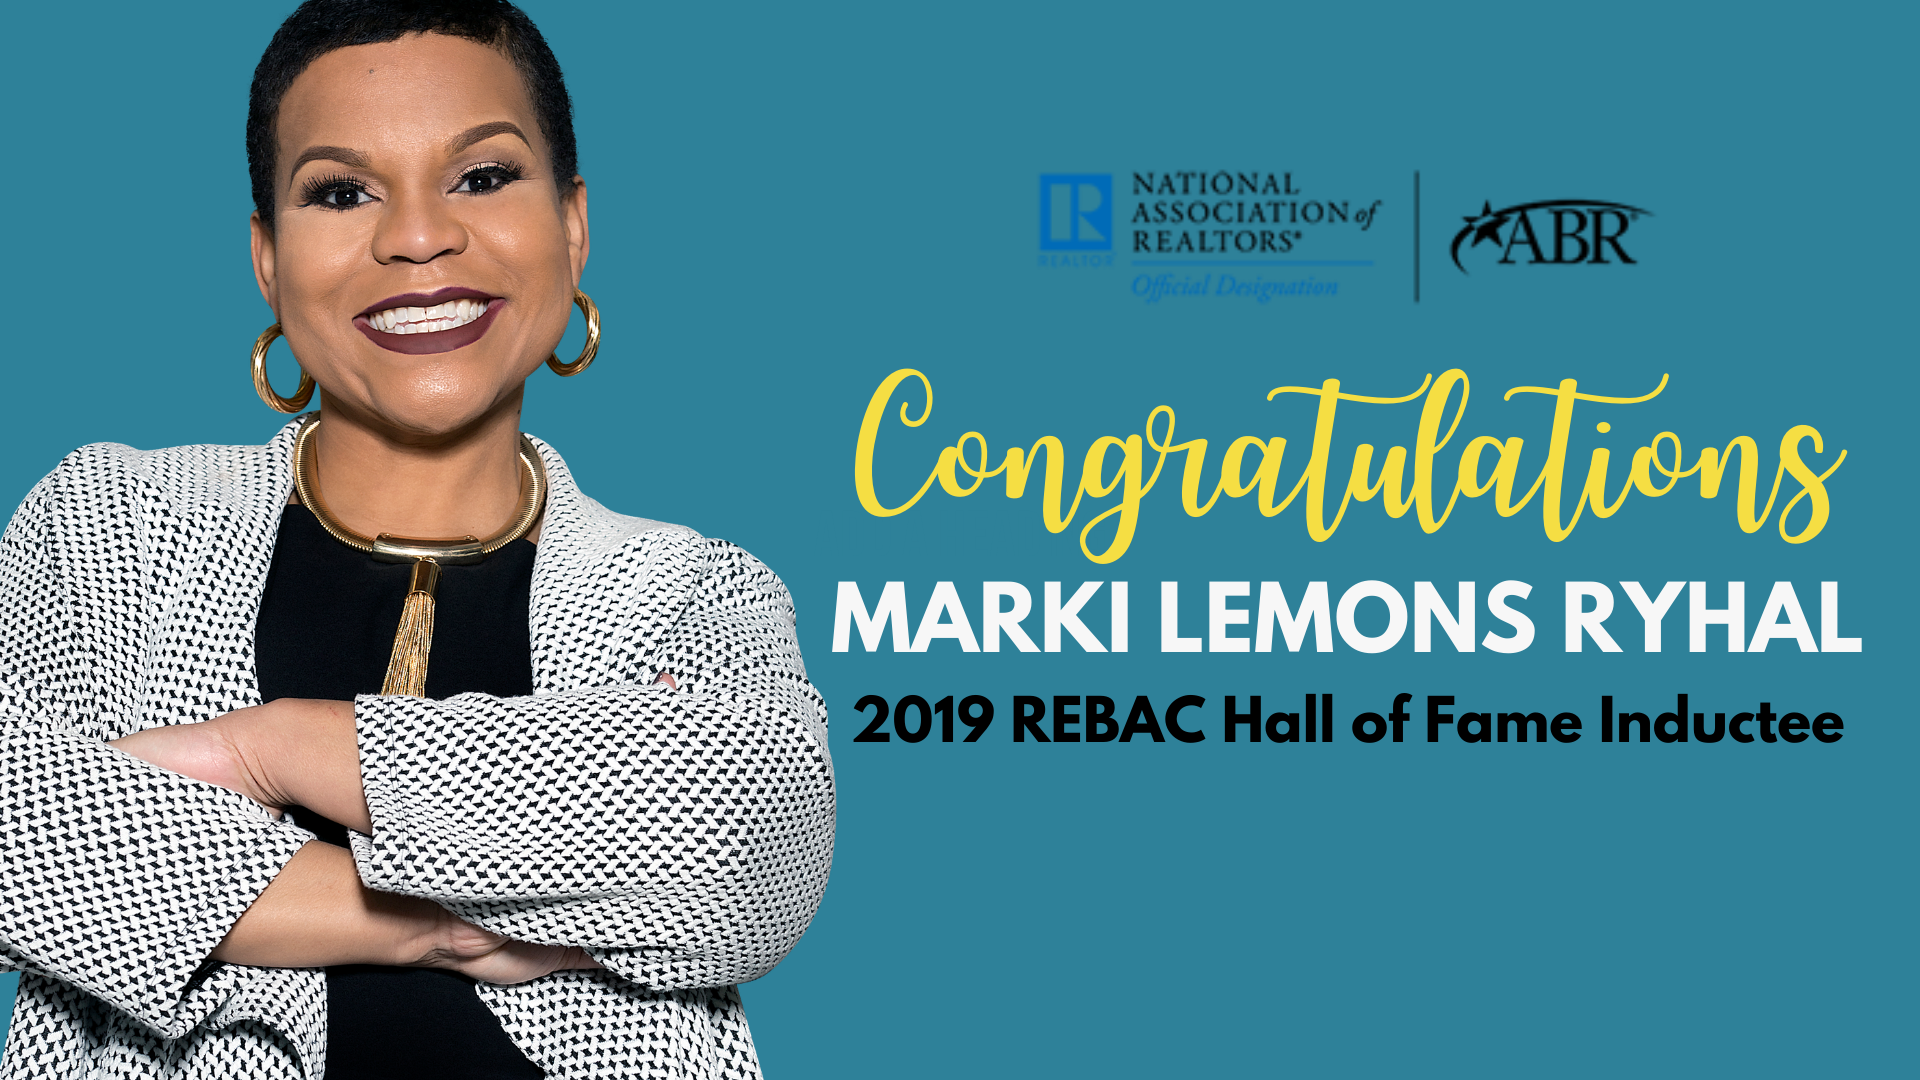 Marki Lemons Ryhal 2019 REBAC Hall of Fame